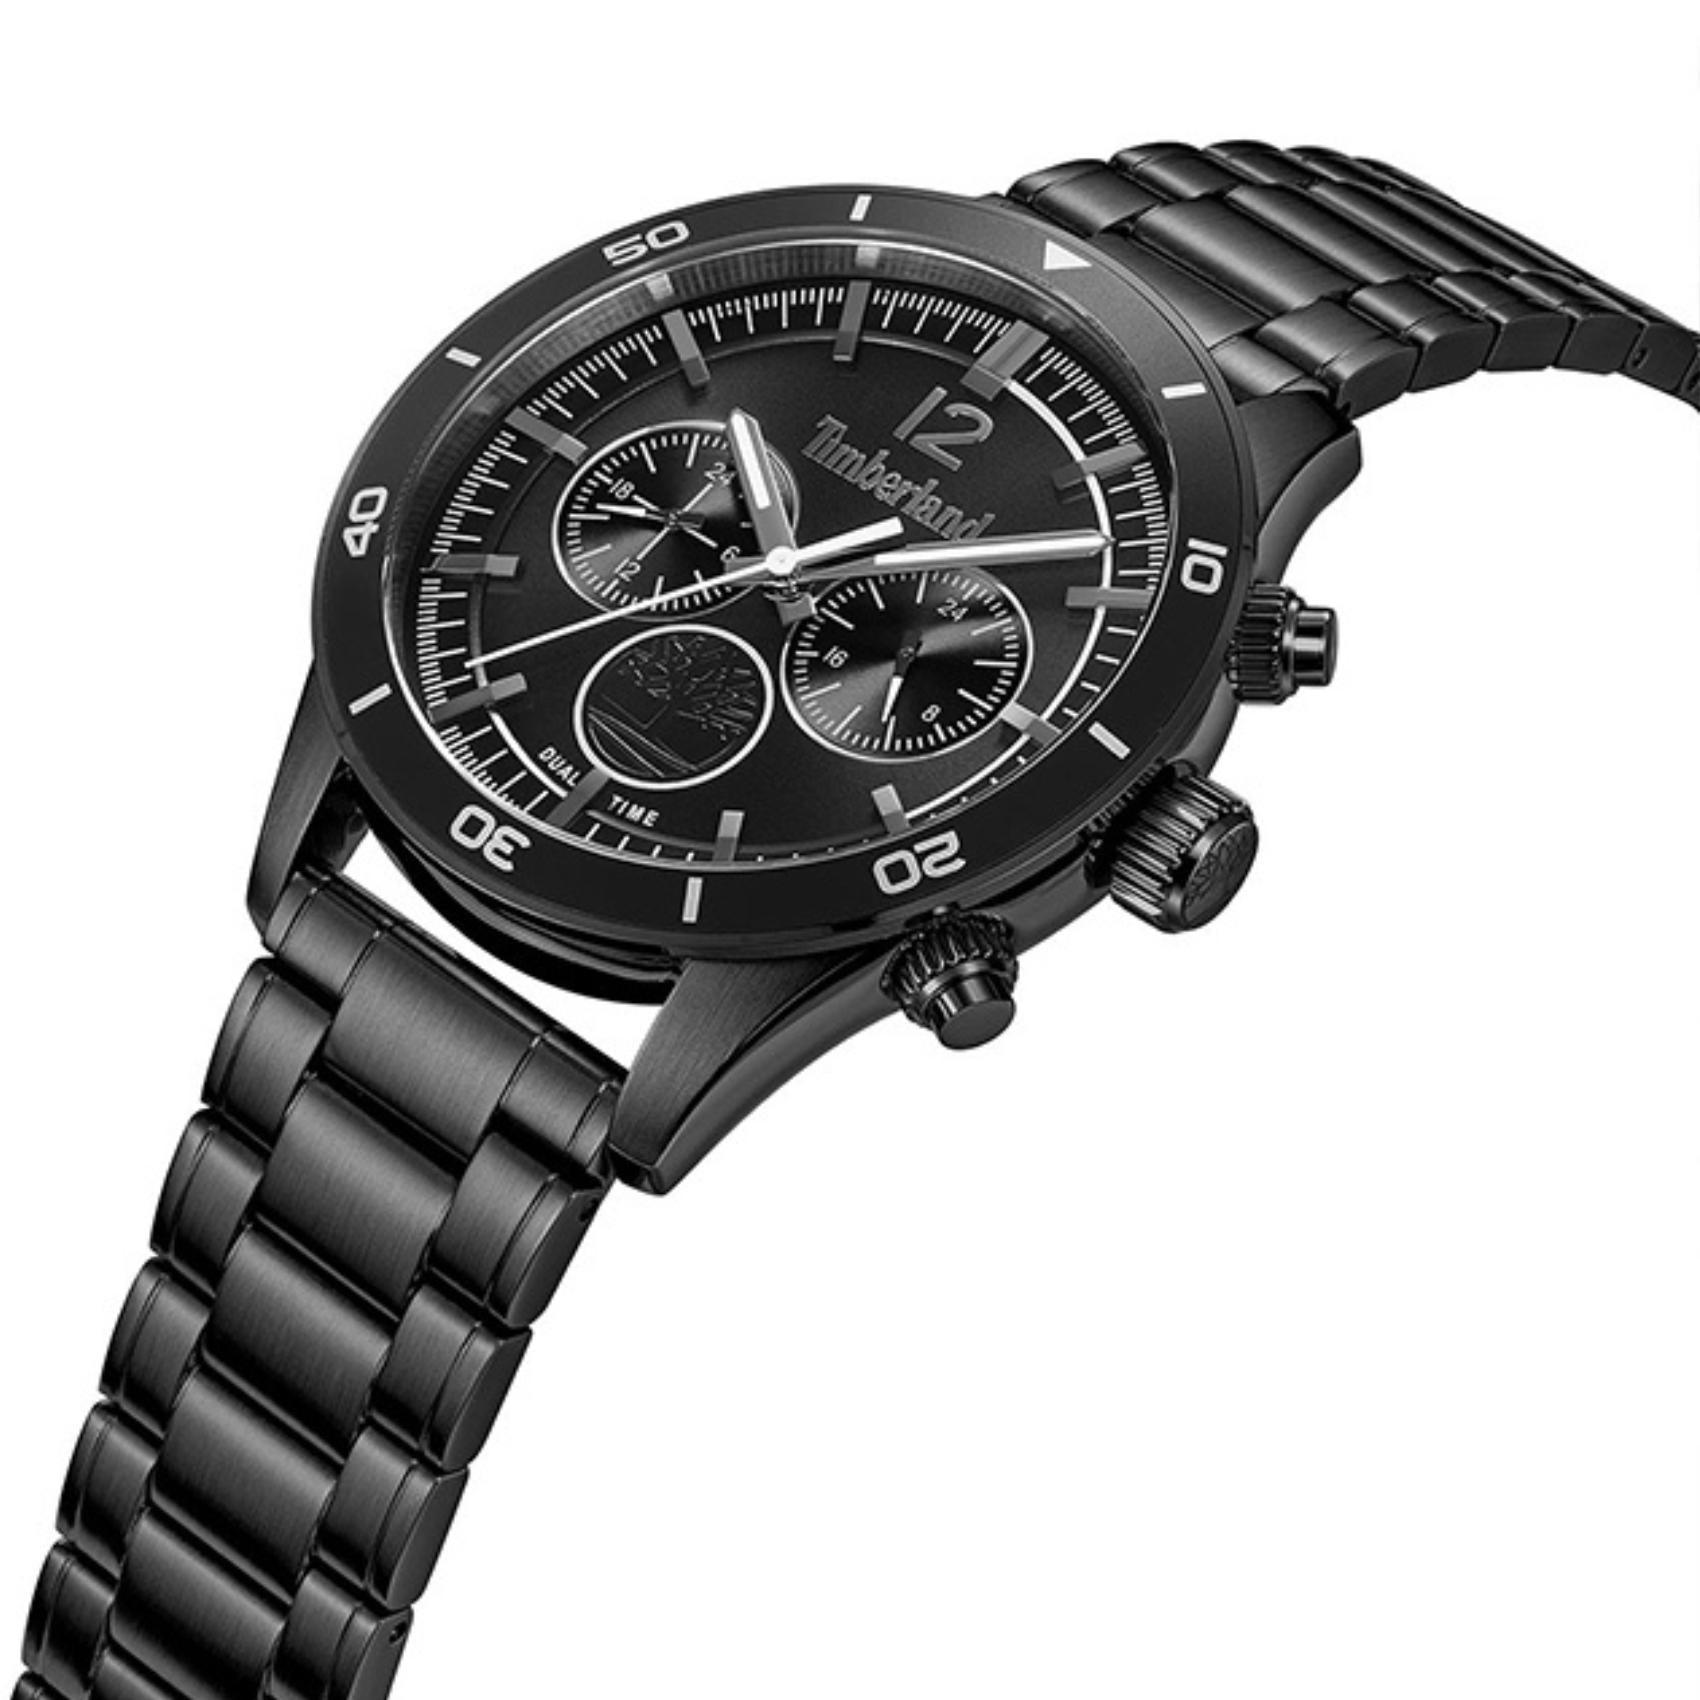 Αντρικό ρολόι Timberland Ashmont TDWGK2230904 Dual Time με μαύρο ατσάλινο μπρασελέ και μαύρο καντράν διαμέτρου 46mm.